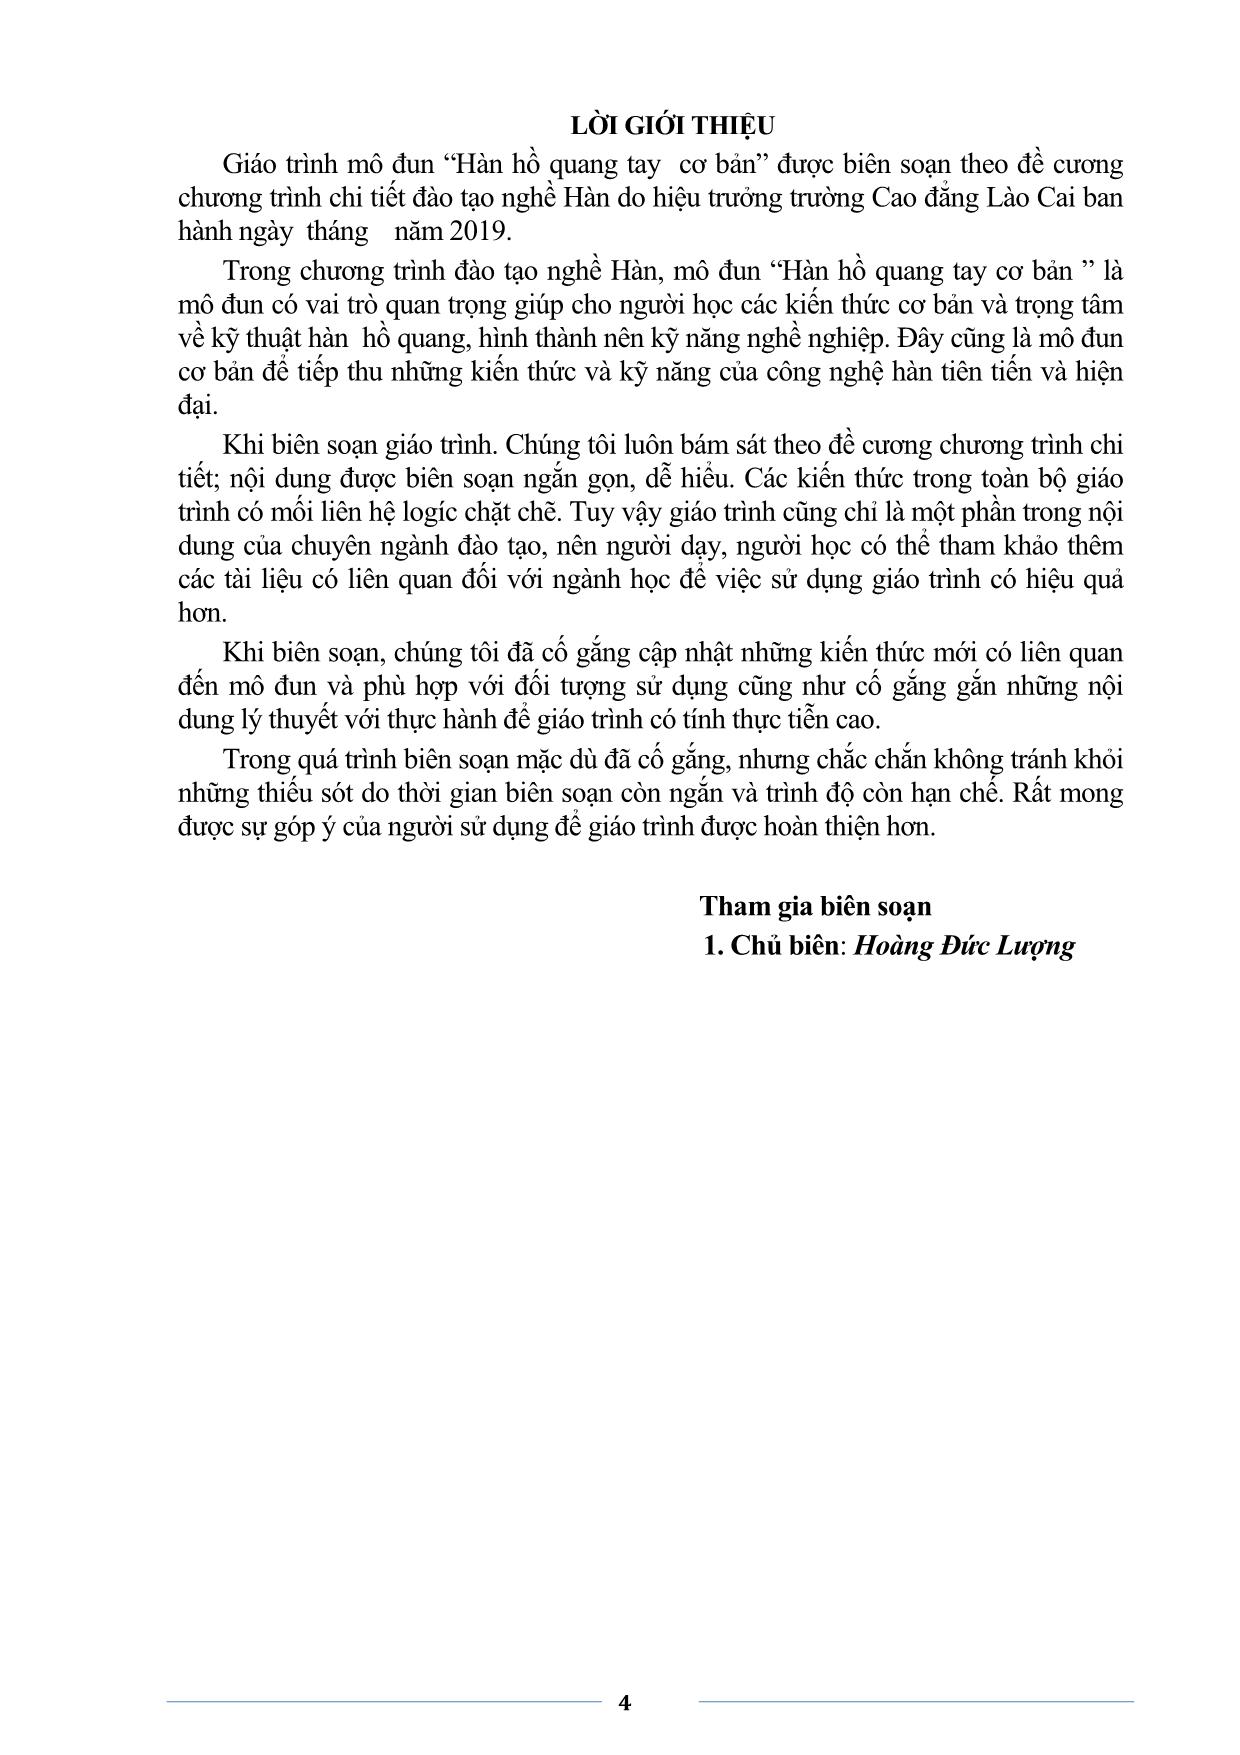 Giáo trình Hồ quang tay cơ bản trang 4